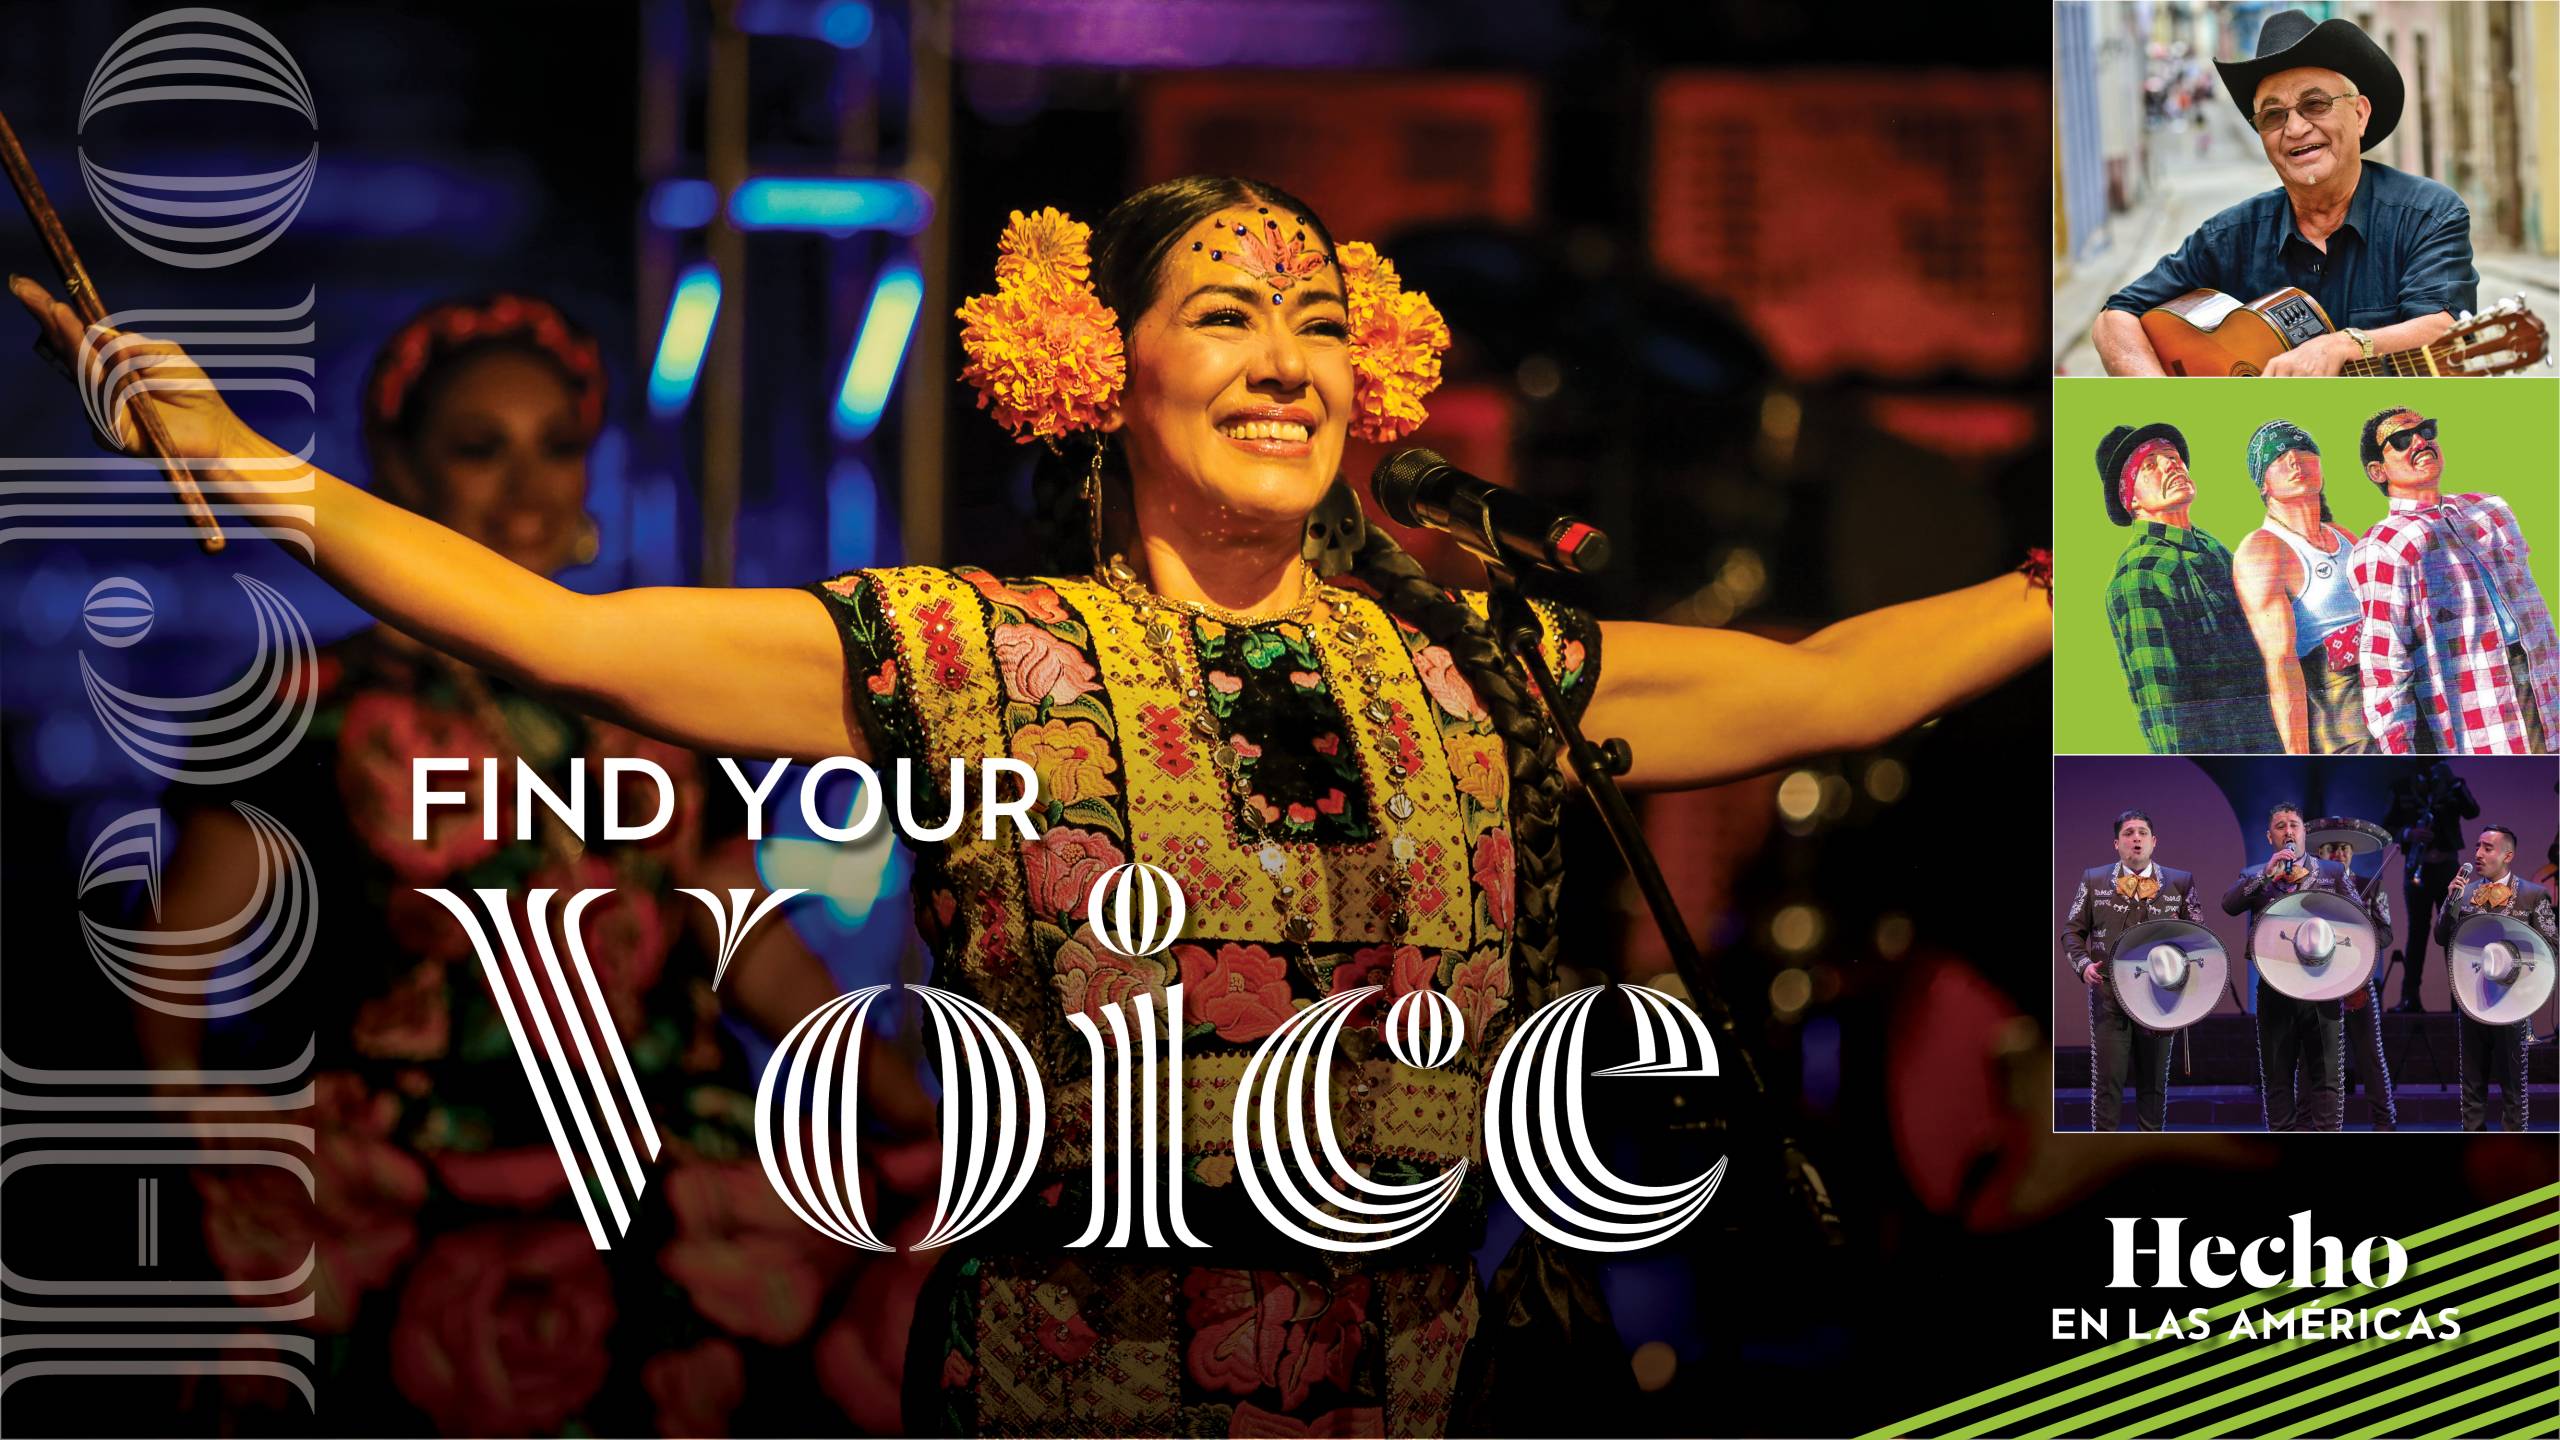 Find your voice | Hecho en las Américas